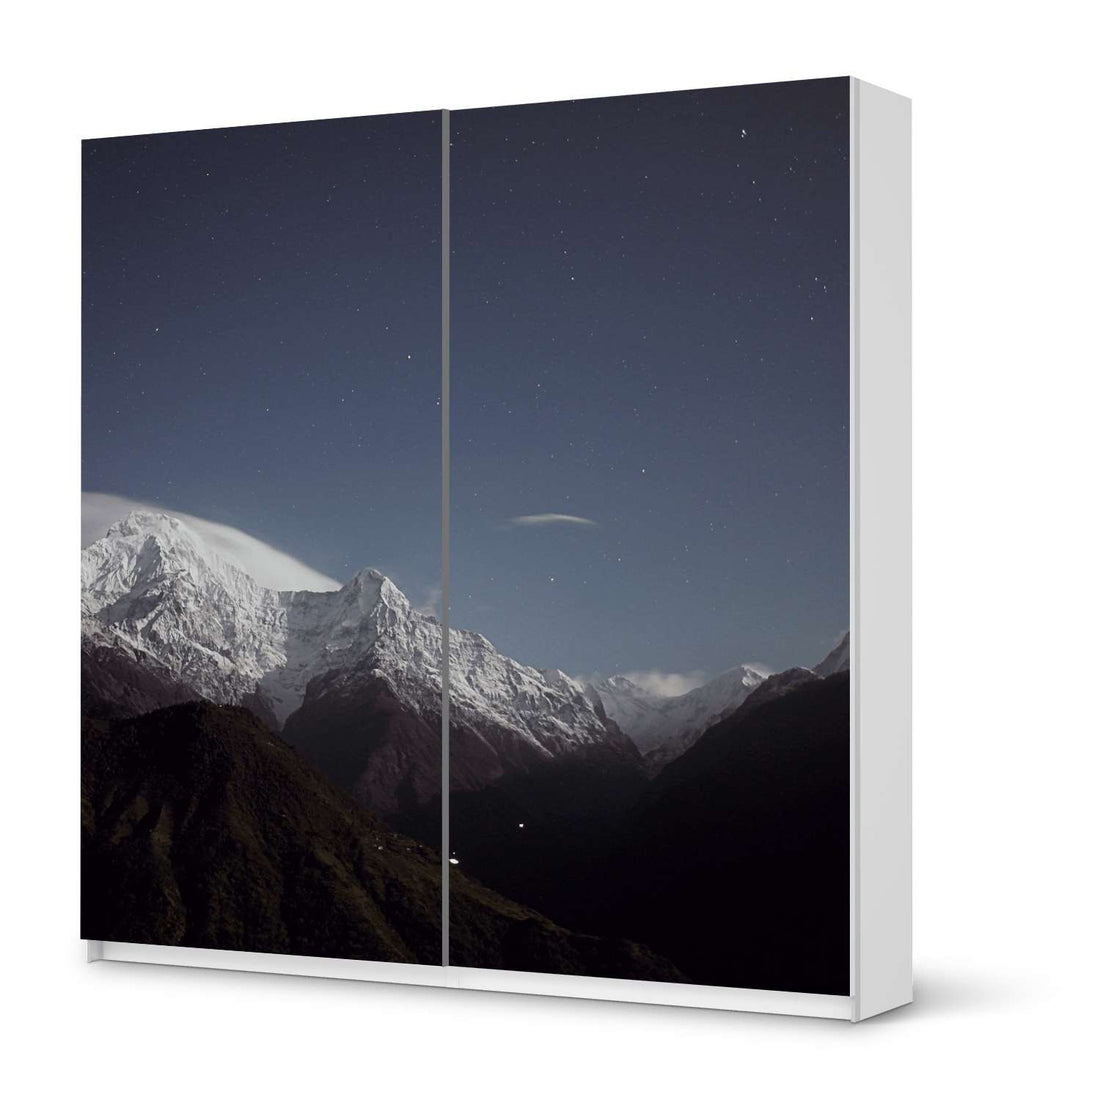 Möbel Klebefolie Mountain Sky - IKEA Pax Schrank 201 cm Höhe - Schiebetür - weiss